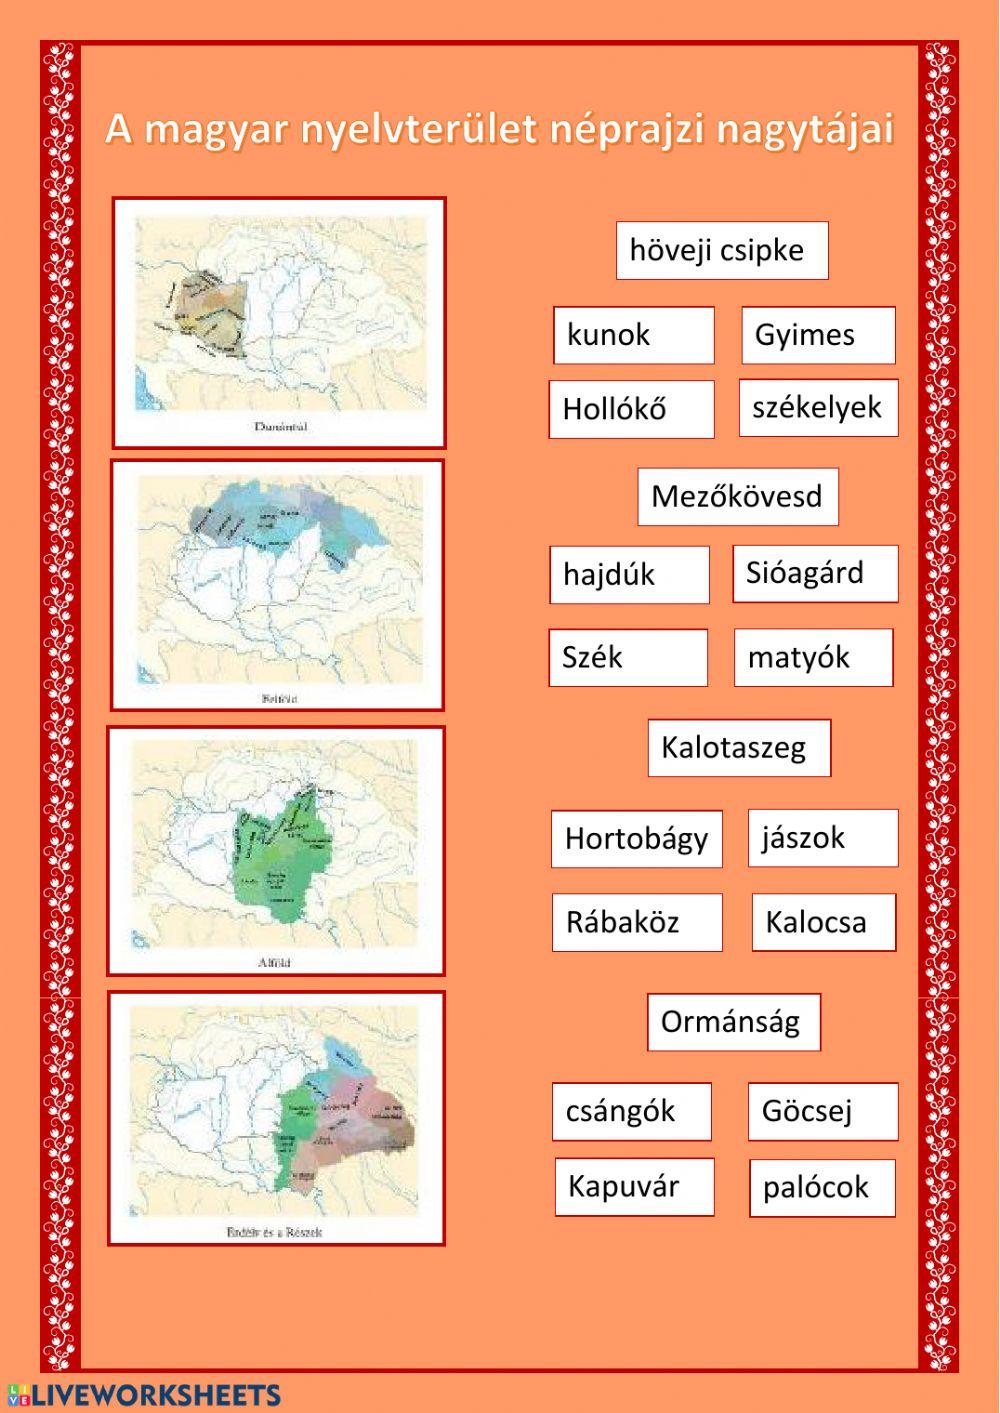 A magyar nyelvterület néprajzi nagytájai